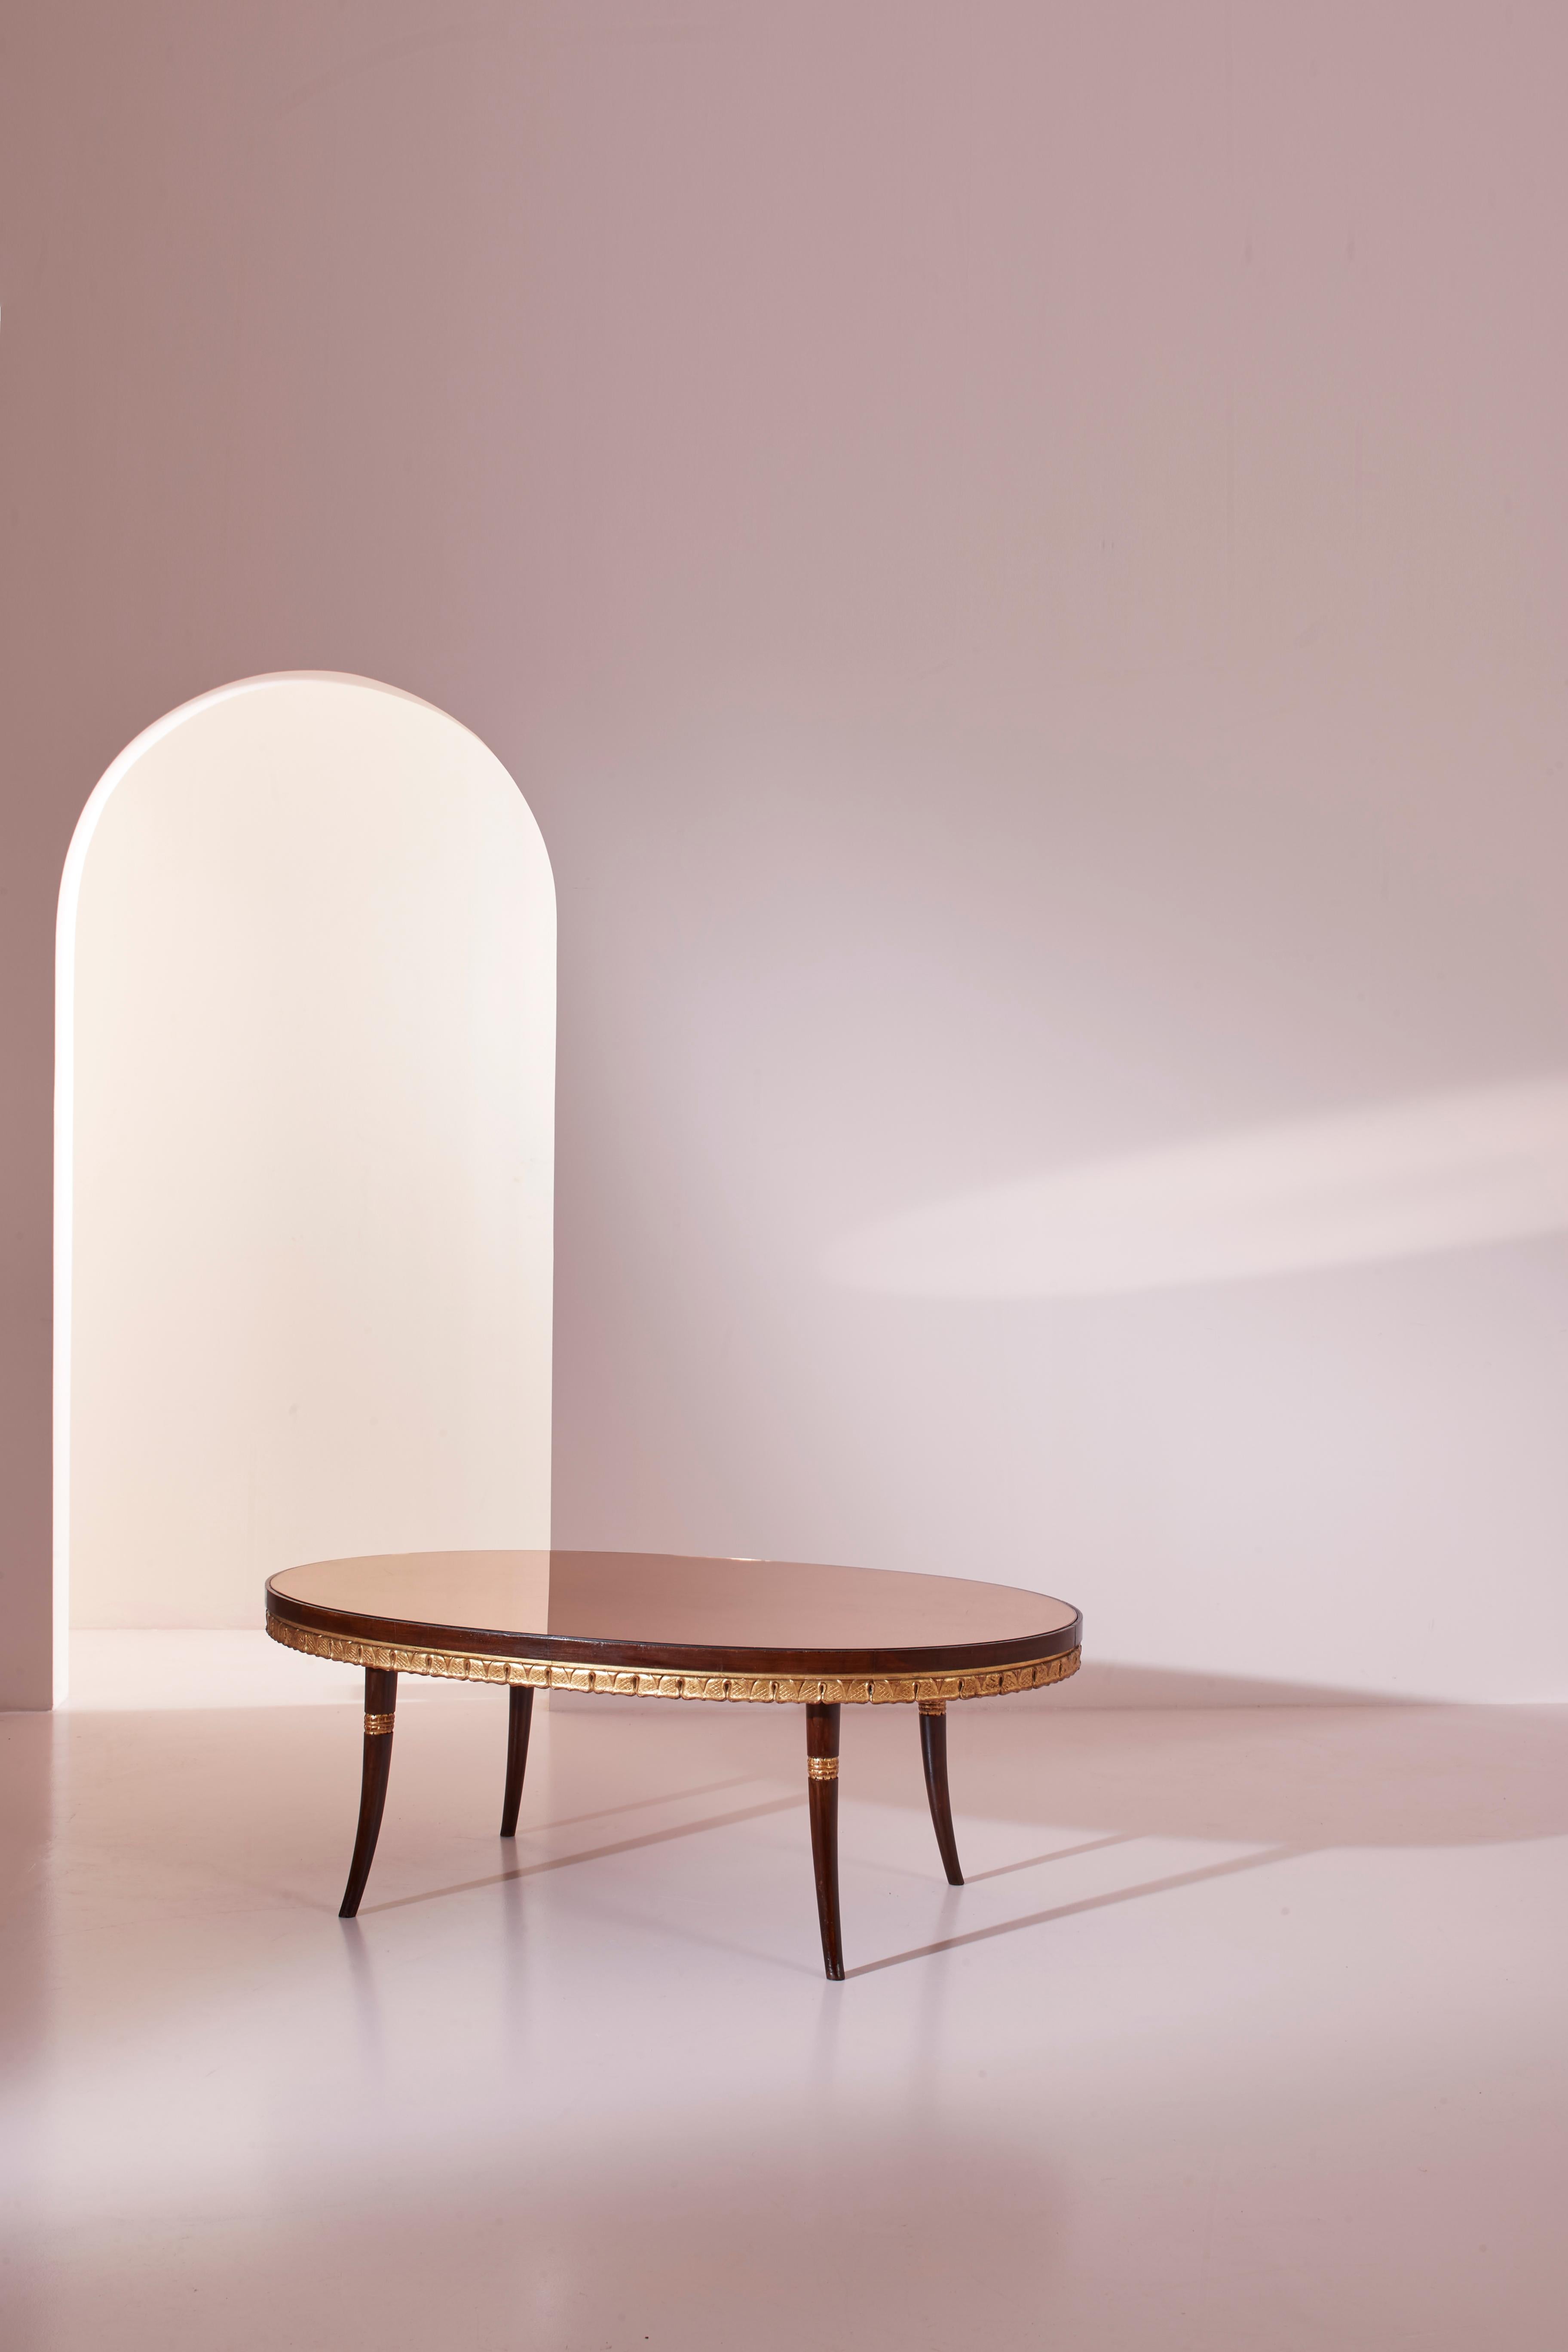 Une magnifique table basse au goût classique, fabriquée en bois peint et doré avec un plateau en verre miroir. Produite en Italie d'après le design de Paolo Buffa, cette petite table date du milieu des années 1950.

Avec une forme ovale et quatre